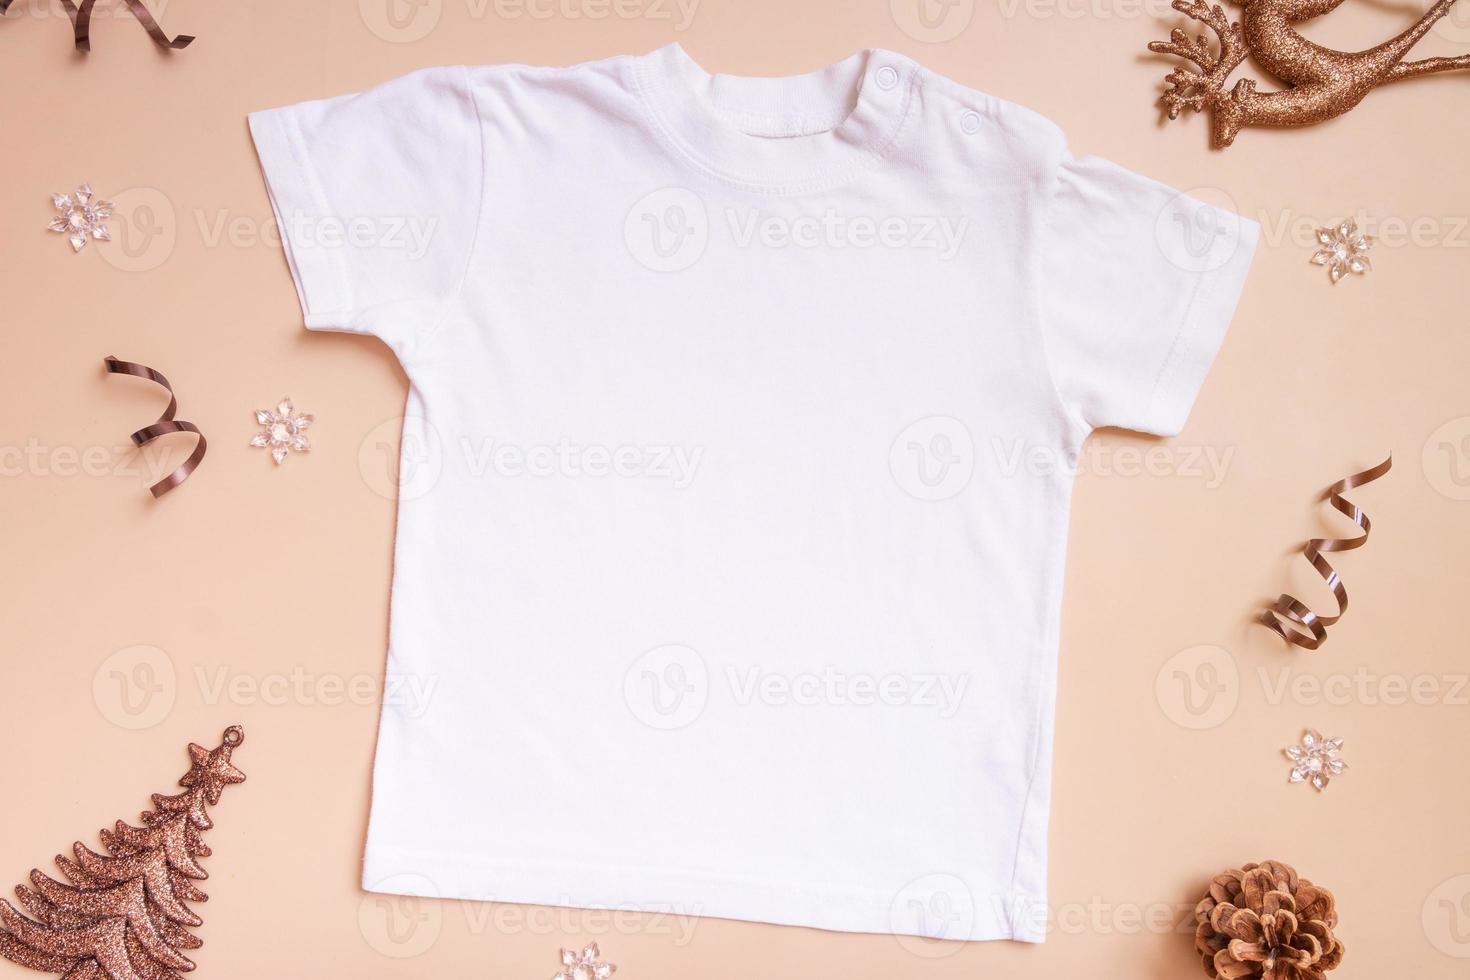 maquete de camiseta de bebê para logotipo, texto ou design em fundo bege com vista superior de decotações de inverno foto